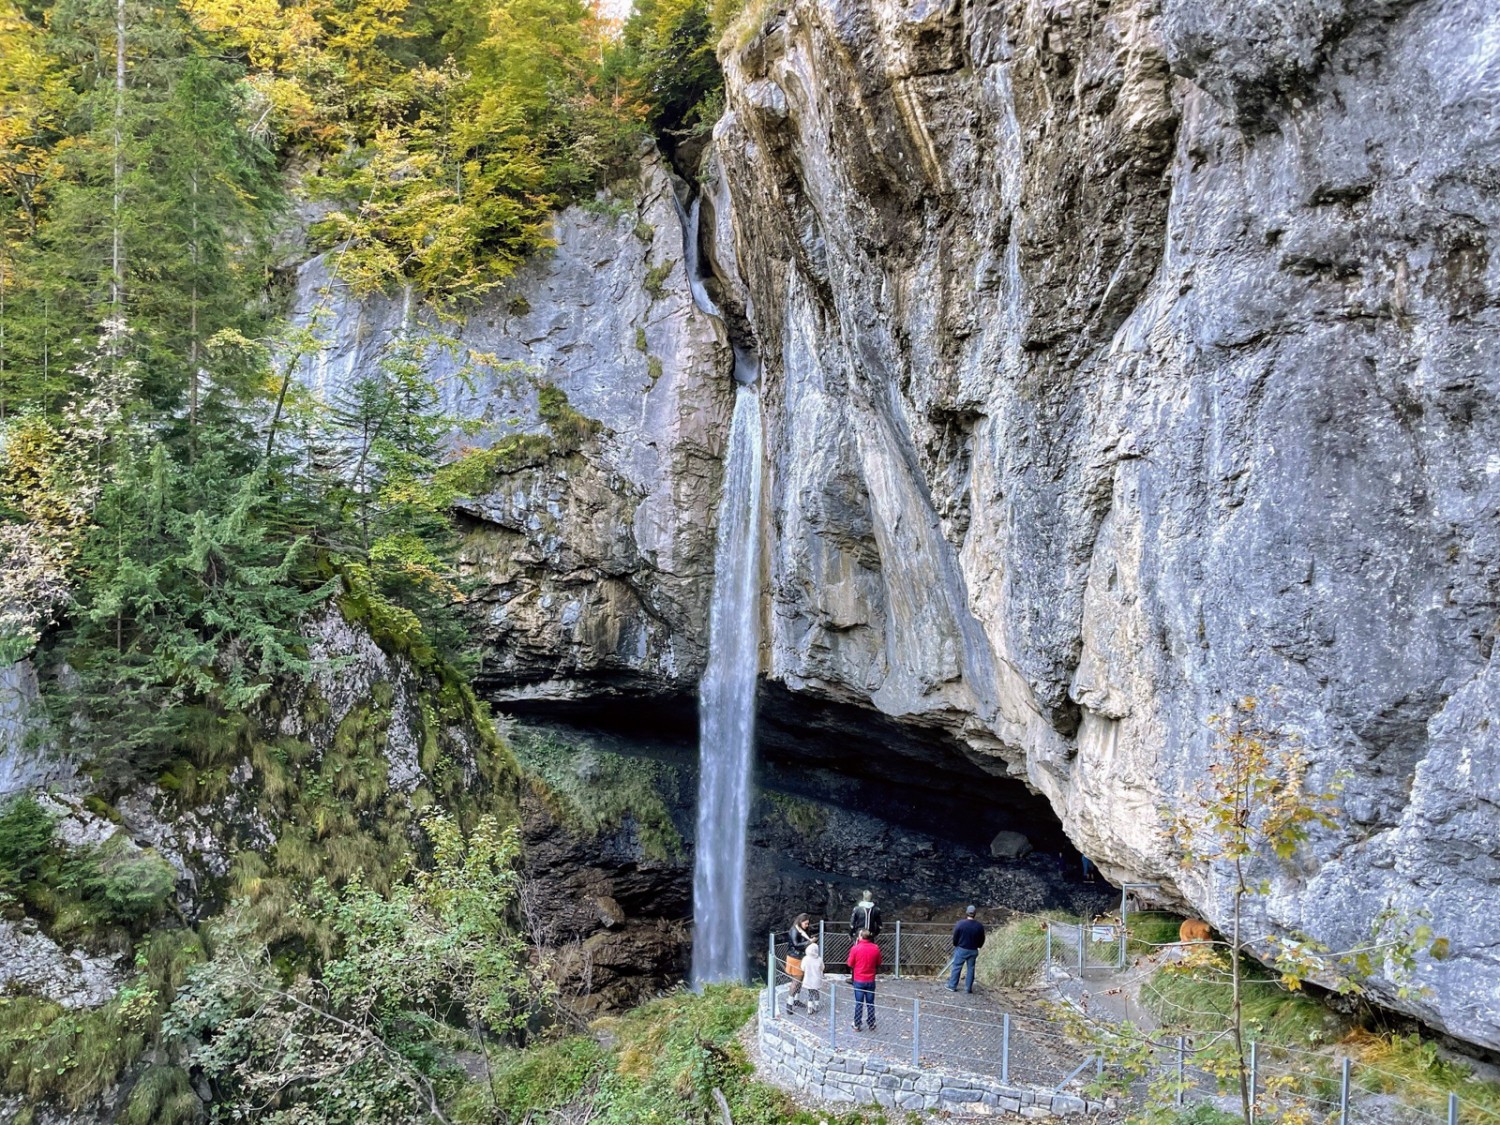 Ein Abstecher zum tosenden Wasserfall Berglistüber – der Zugangsweg wurde mit Geldern aus dem Post-Förderpreis saniert. Bild: Monika Leuenberger